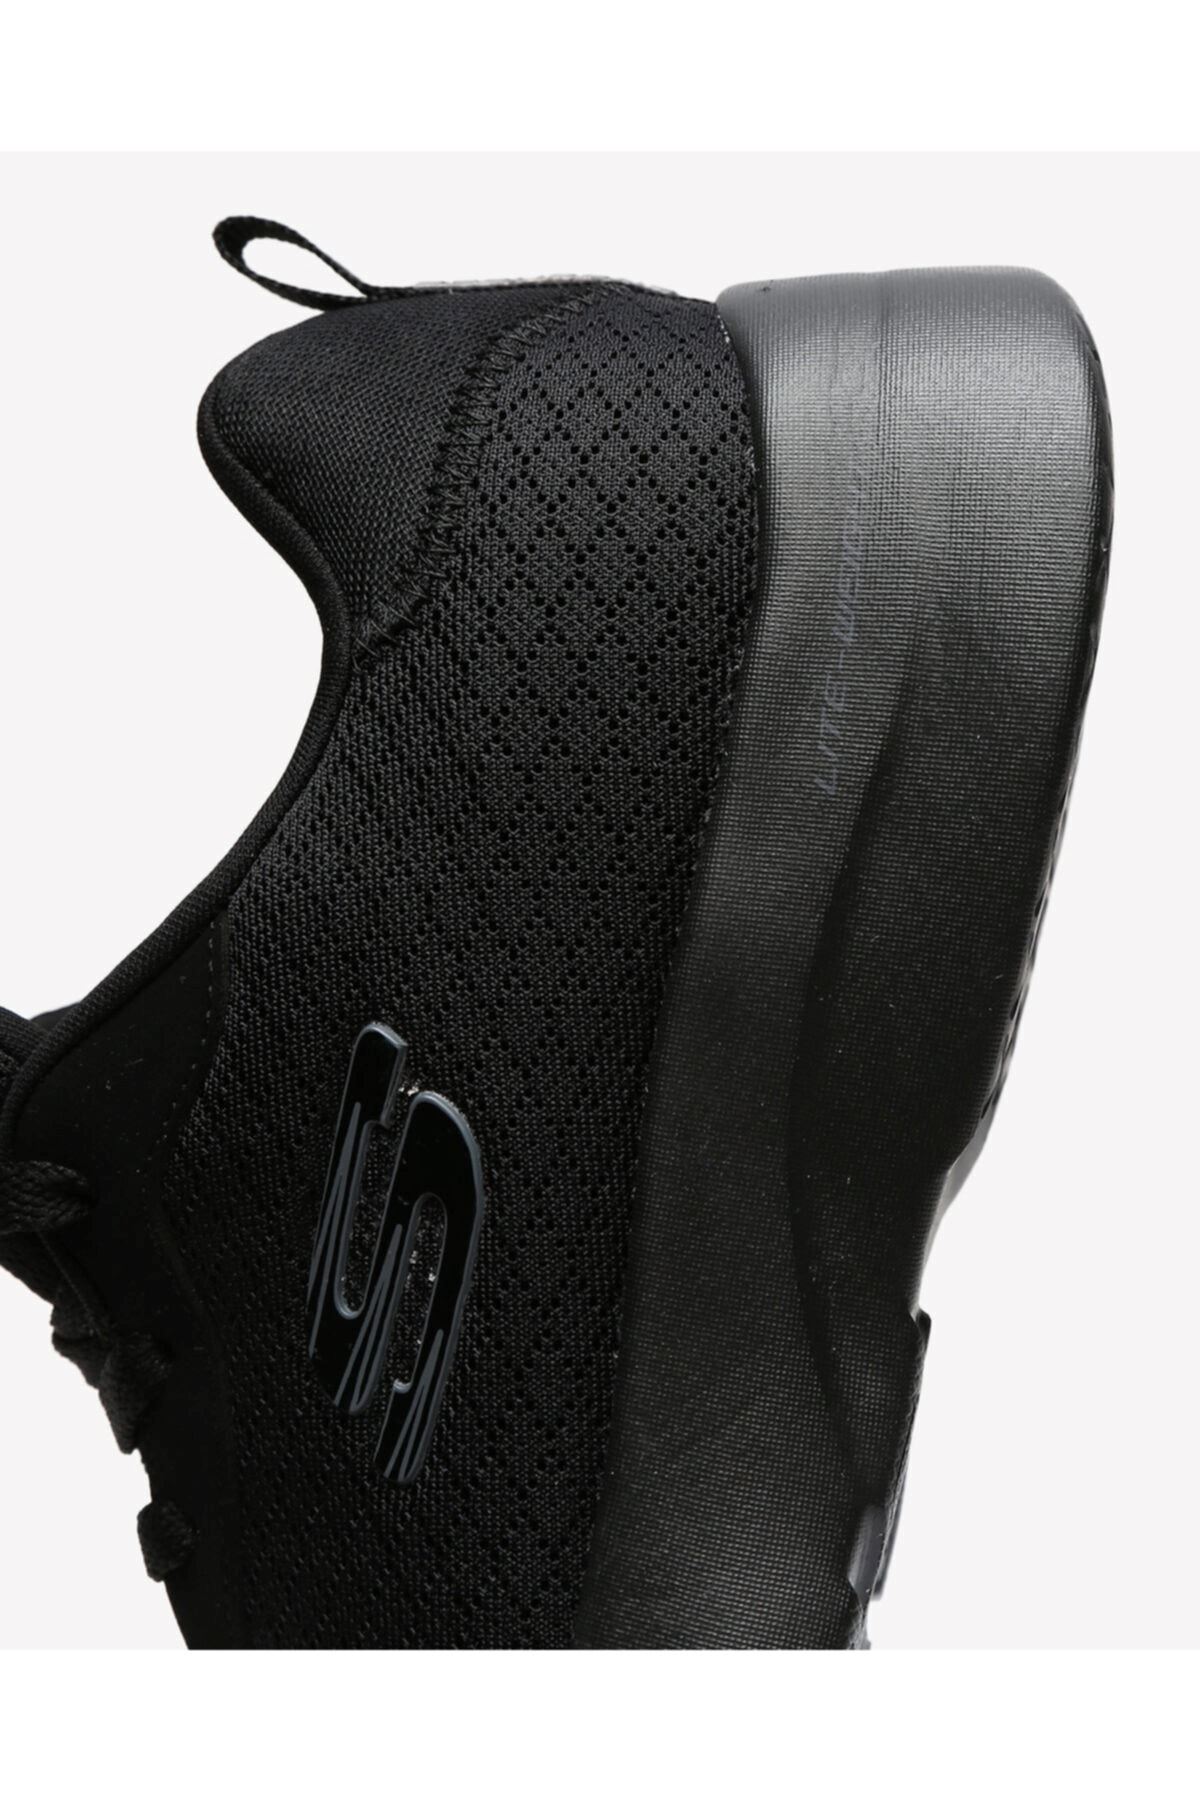 BBK Skechers Dynamıght 2.0 Kadın Siyah Spor Ayakkabı - 12964TK